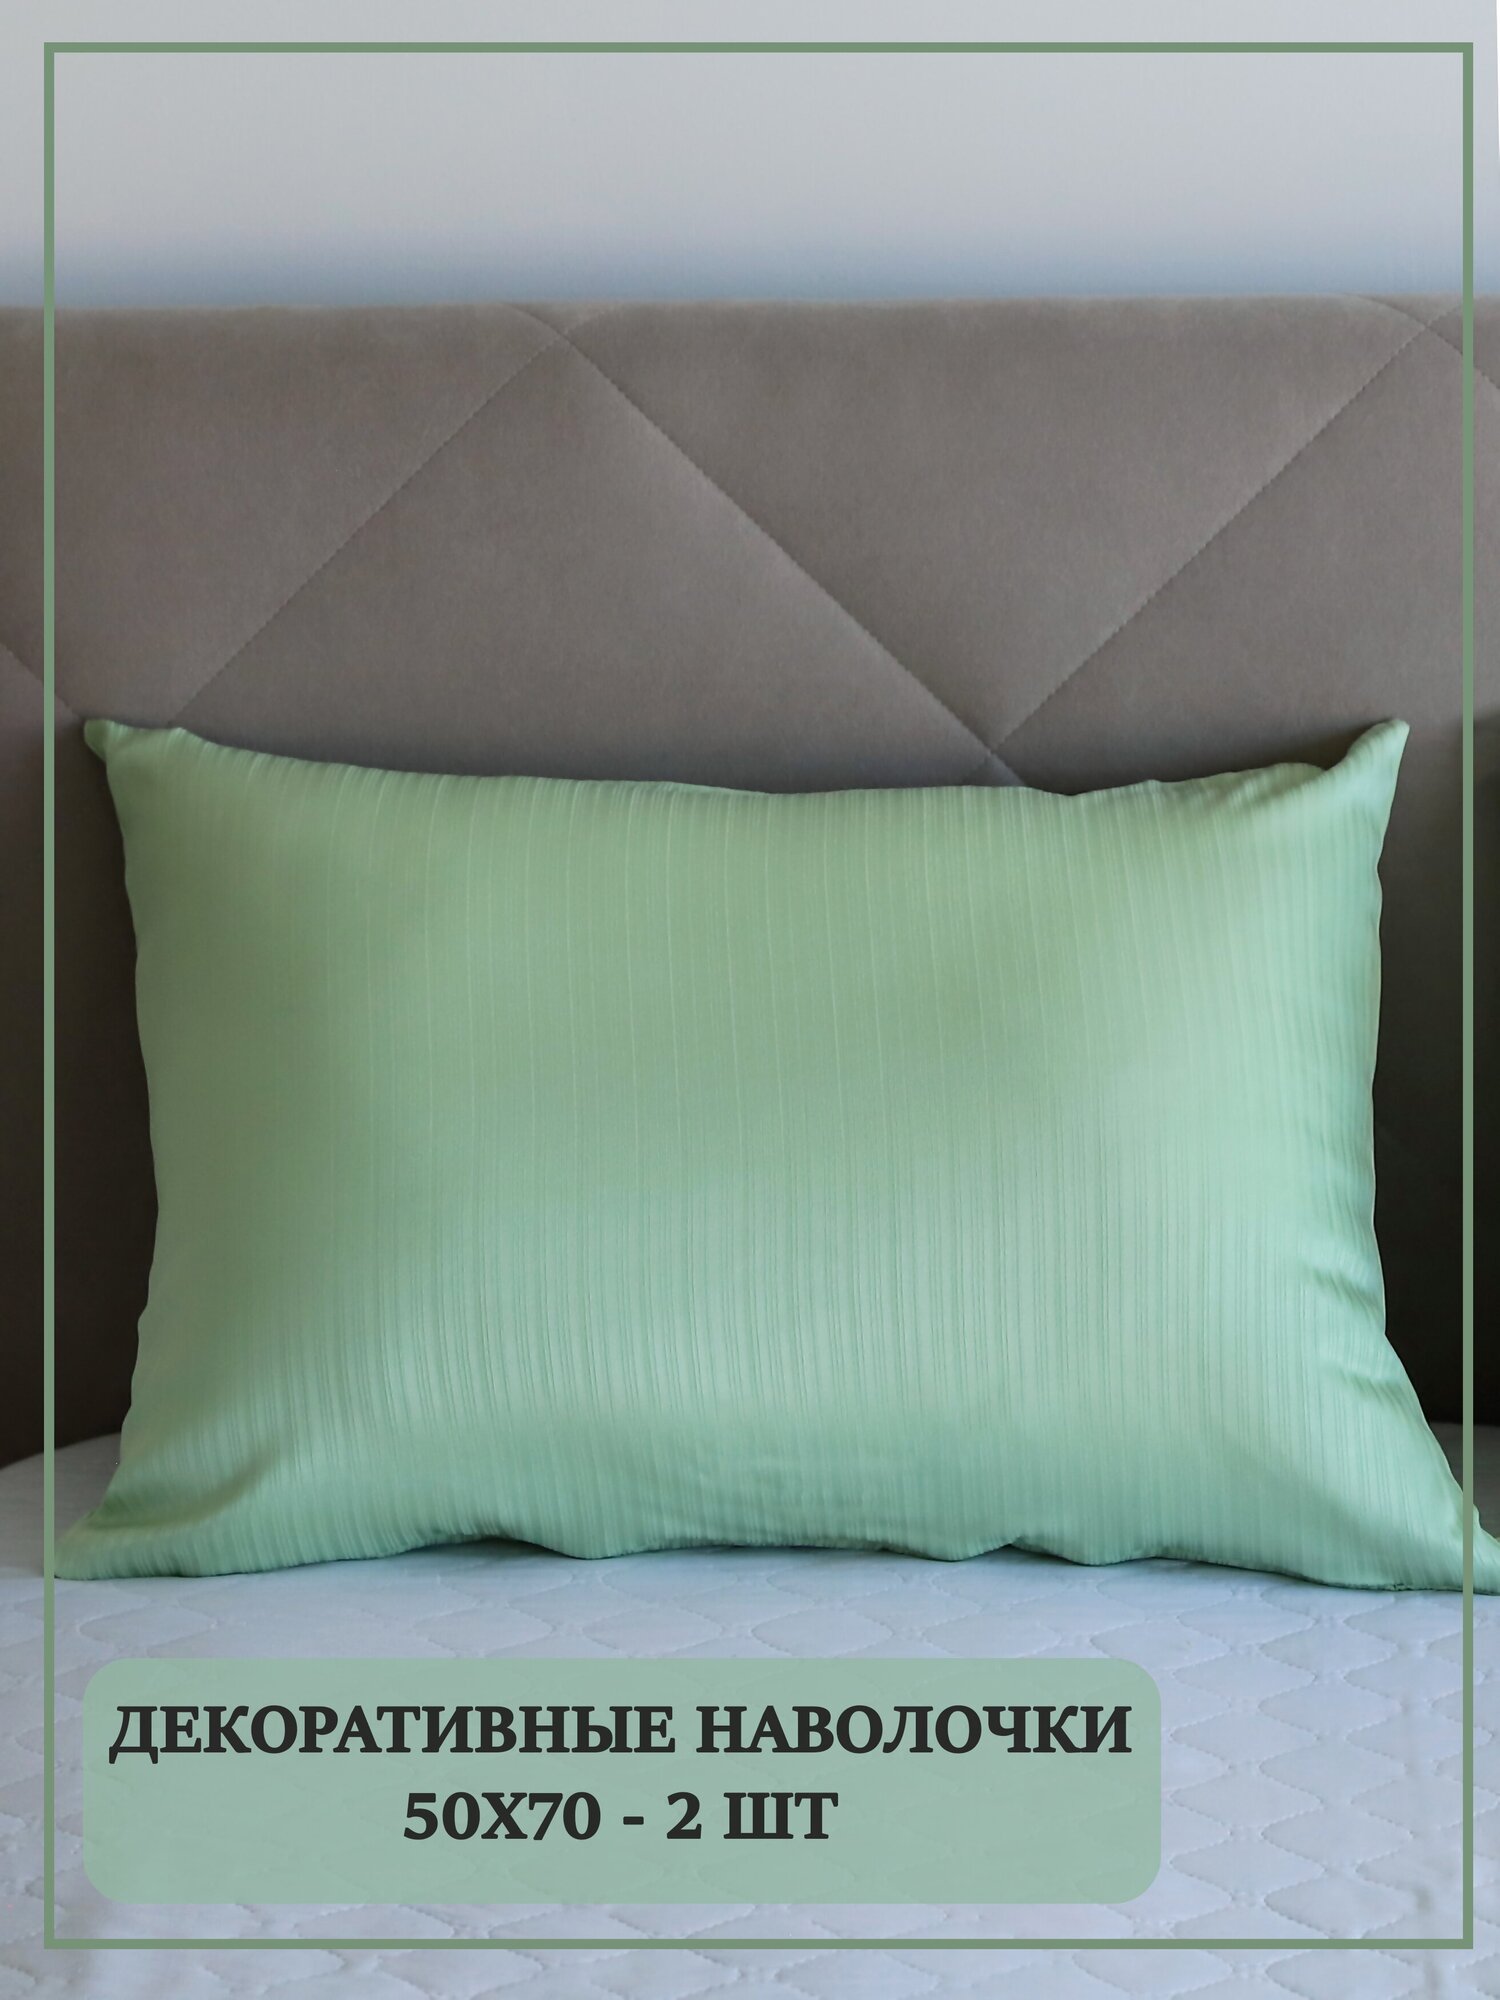 Наволочки декоративные на подушки 50х70 / цвет зеленая-груша / интерьер для дома / 2 штуки в комплекте